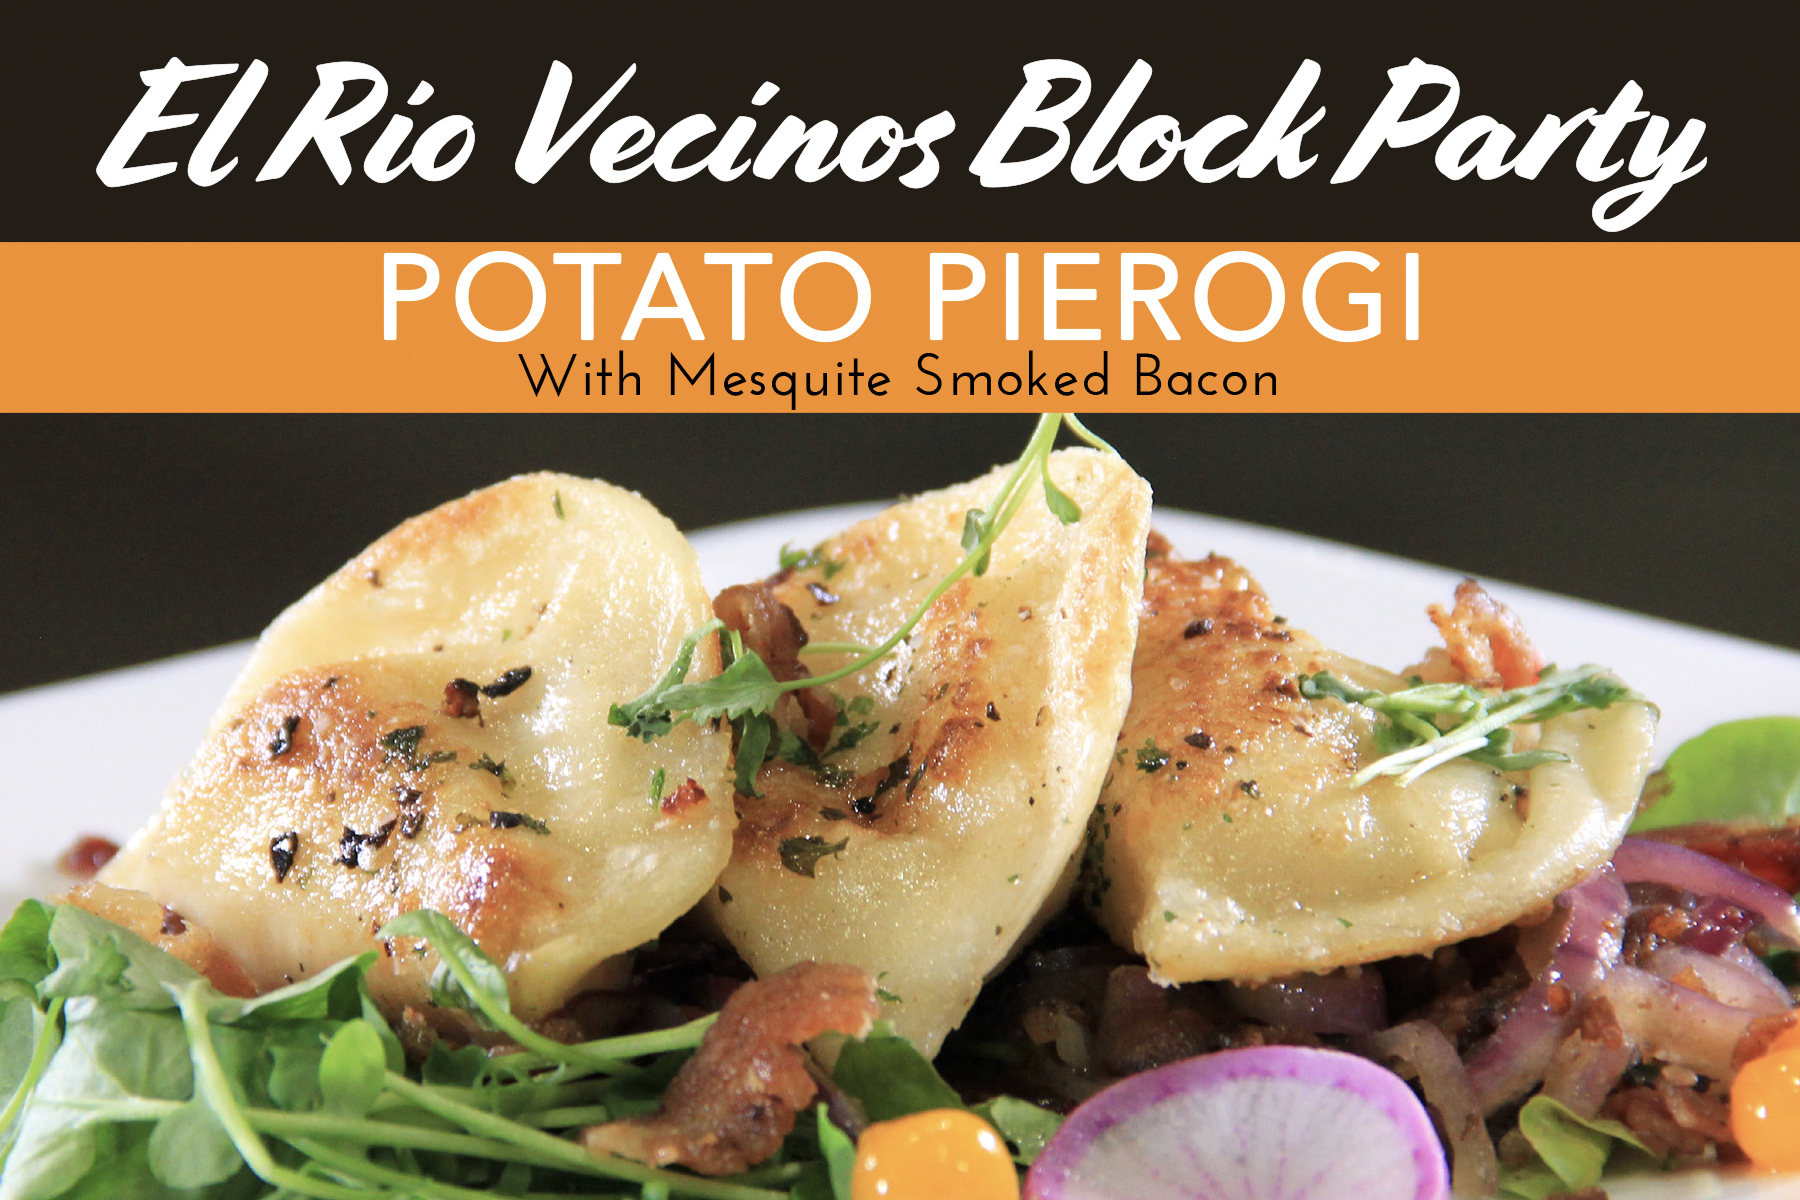 El Rio Vecinos Block Party Potato Pierogi recipe